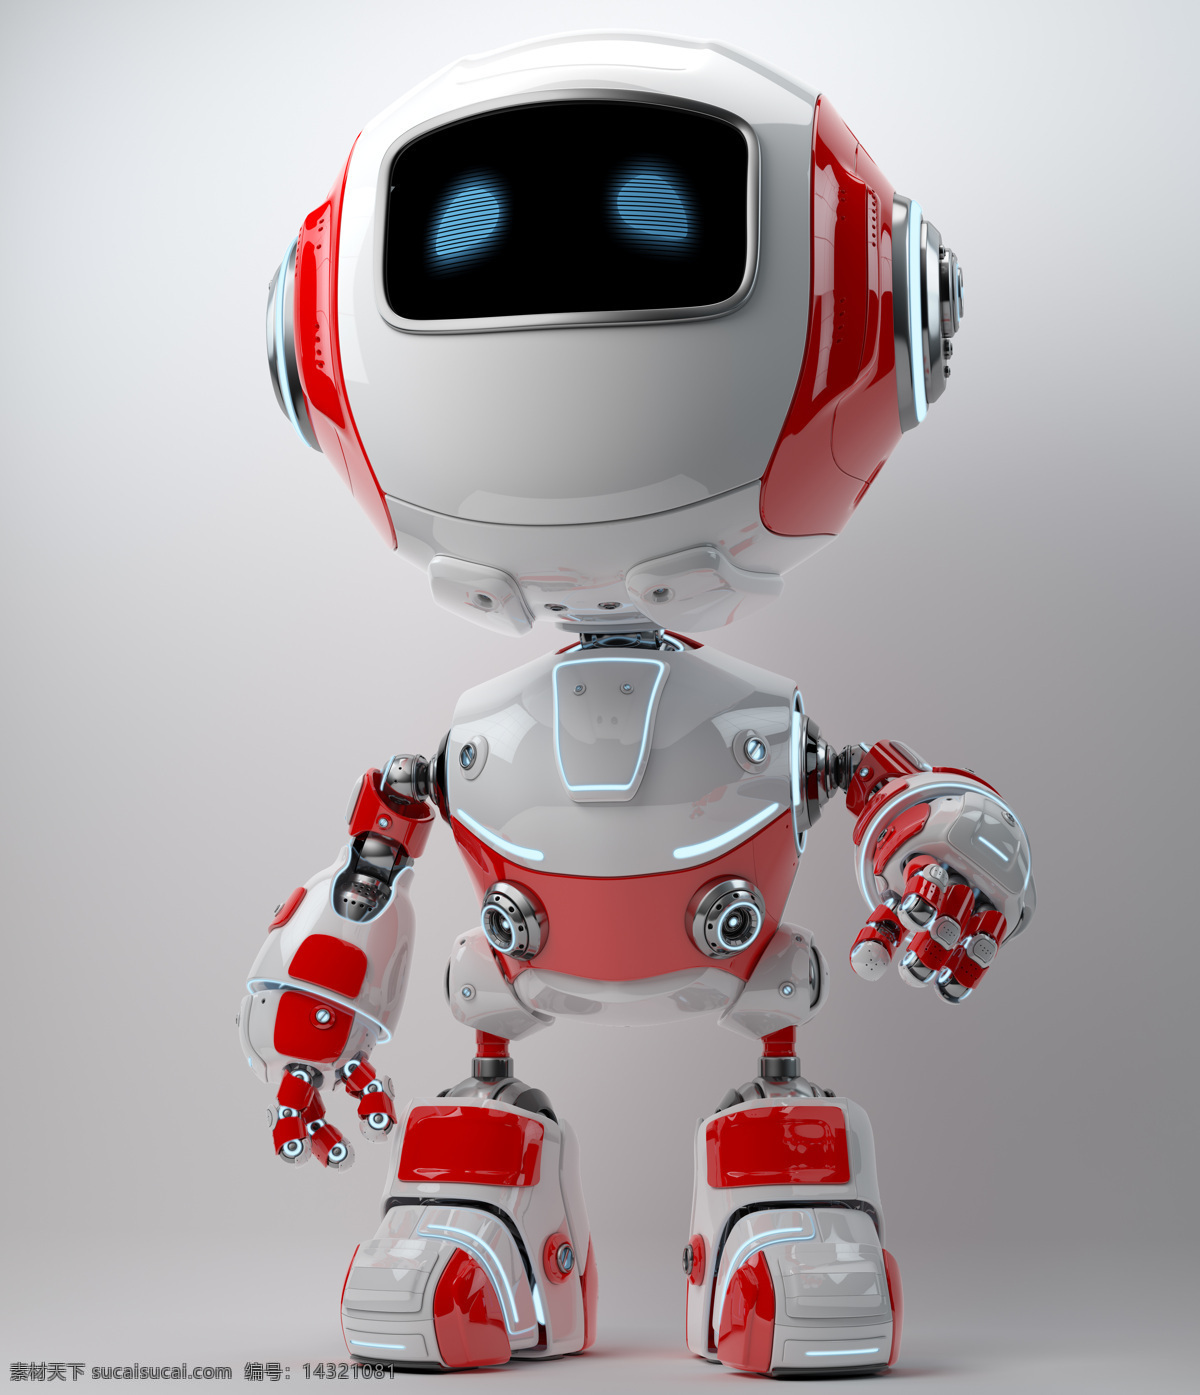 红 白相 间 小 机器人 红白相间 机器 科技 其他人物 人物图片